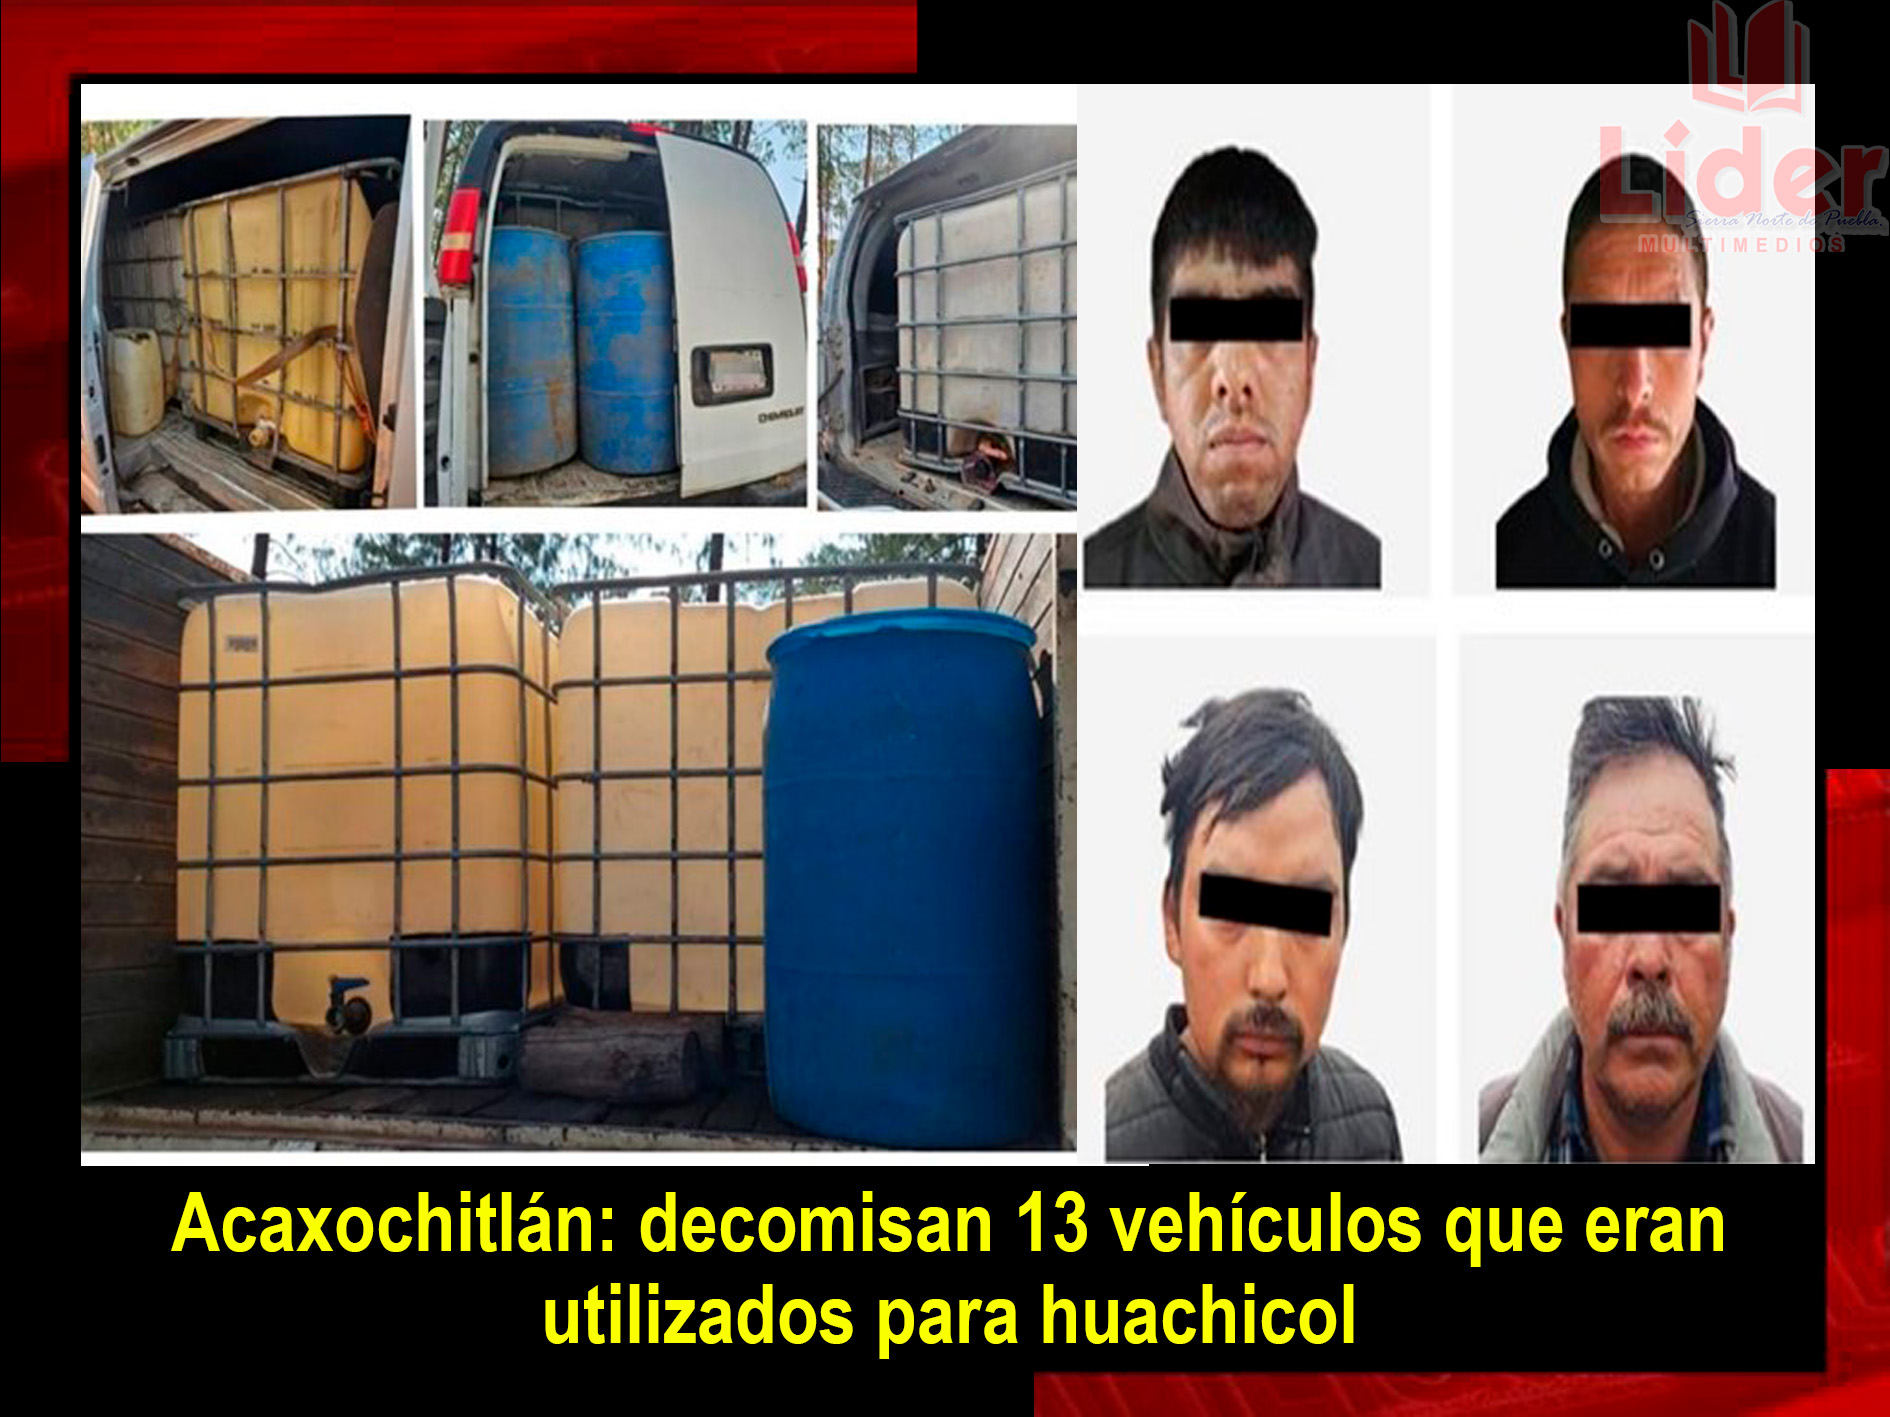 Cuatro hombres, 13 autos, huachicol, armas drogas, asegurados en Acaxochitlán